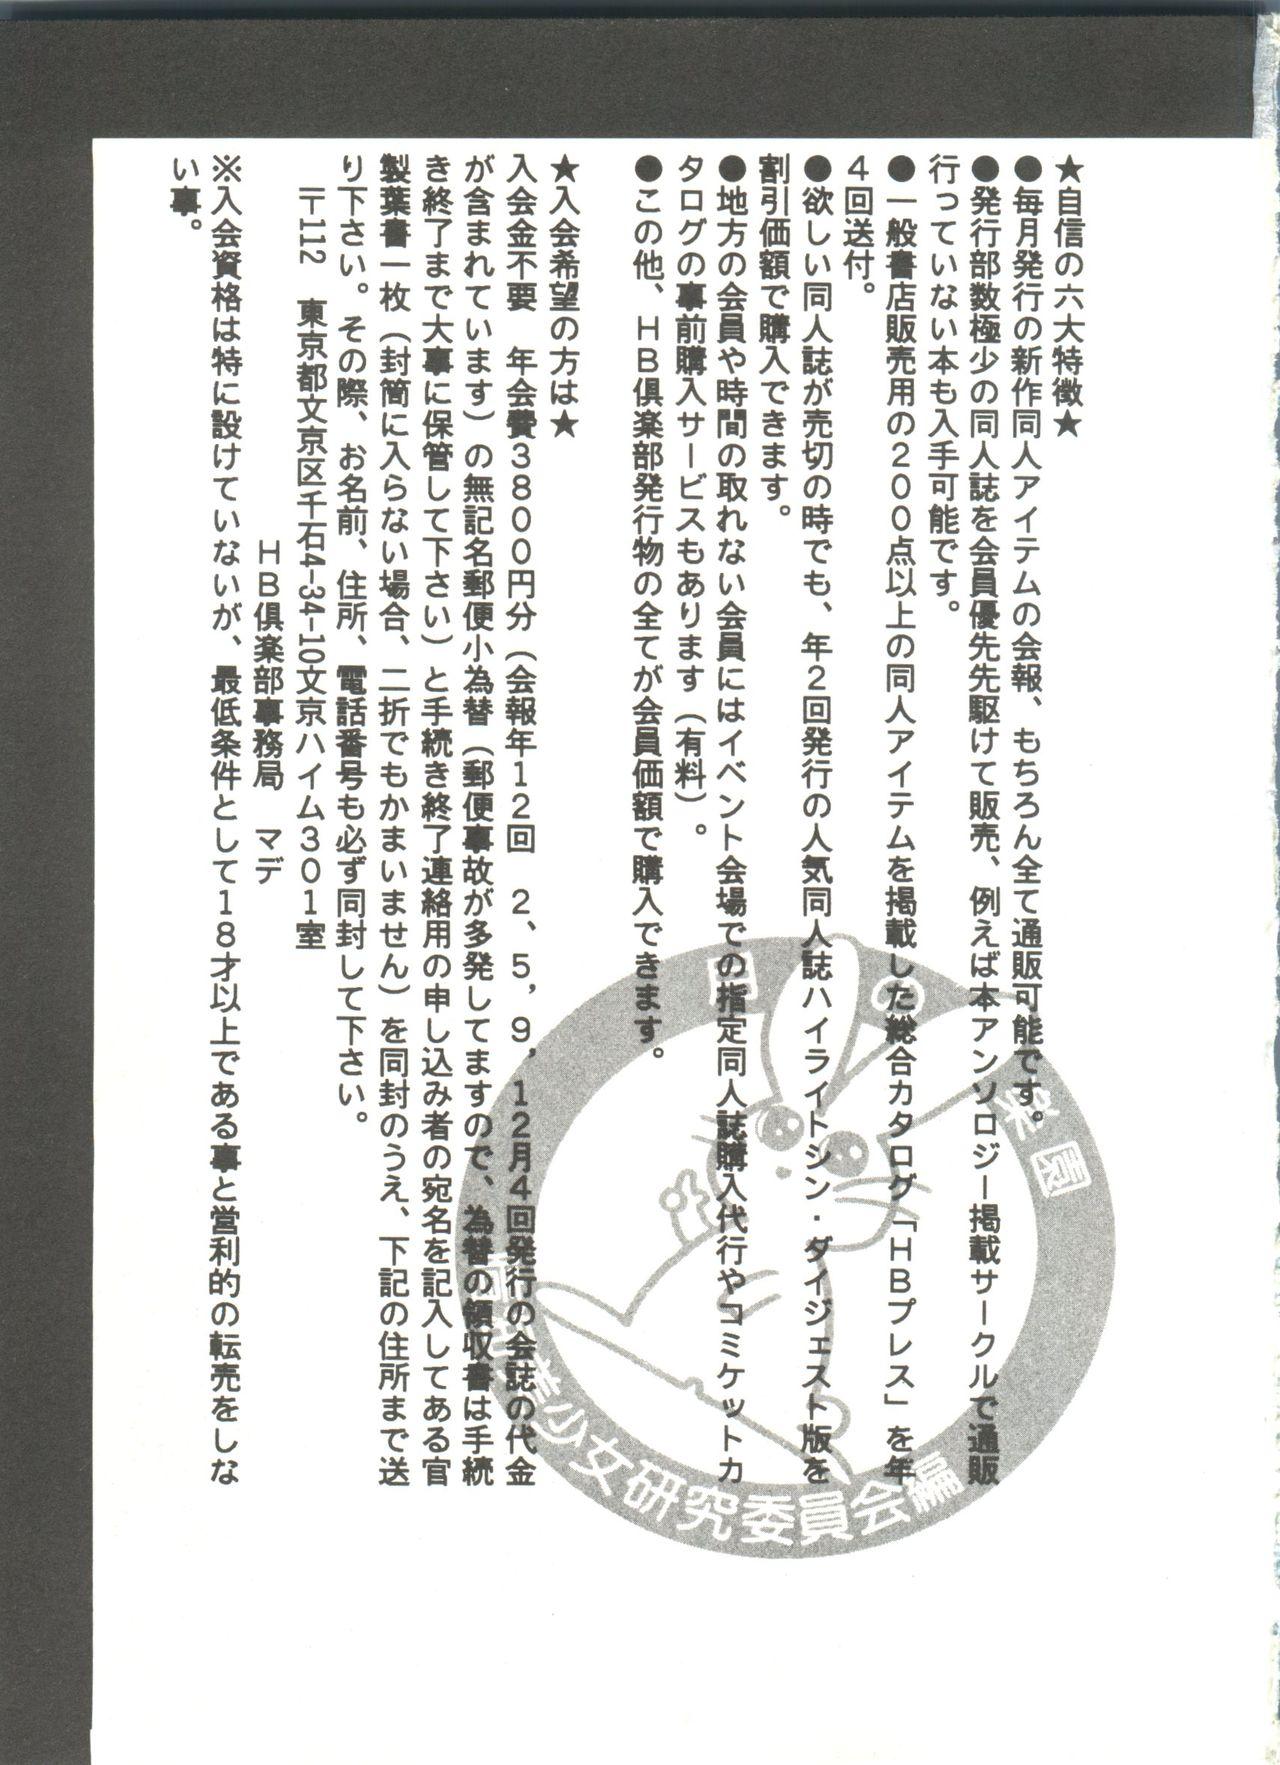 Bishoujo Doujinshi Anthology 8 - Moon Paradise 5 Tsuki no Rakuen 147